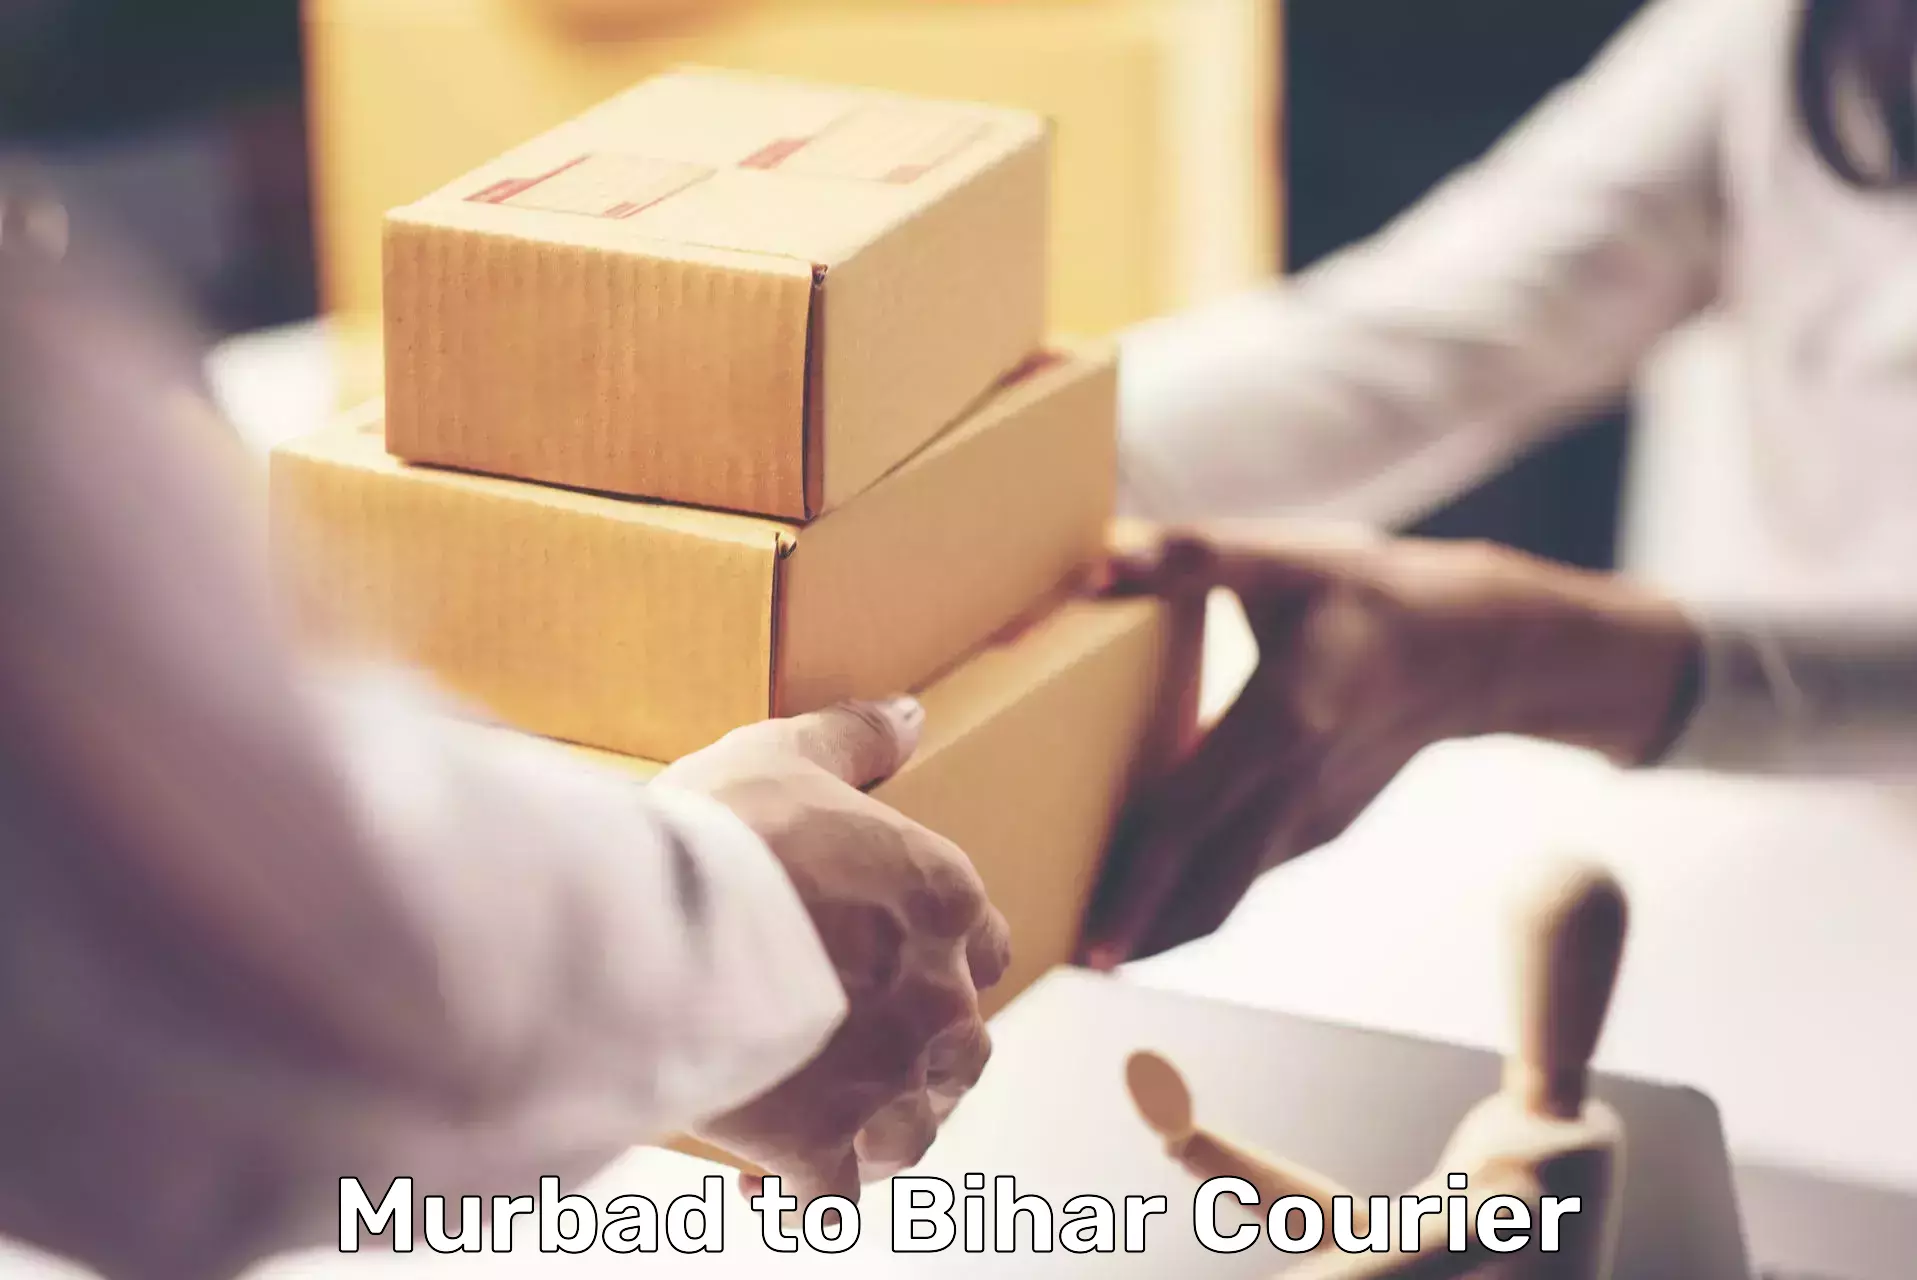 Premium courier services in Murbad to Goh Aurangabad